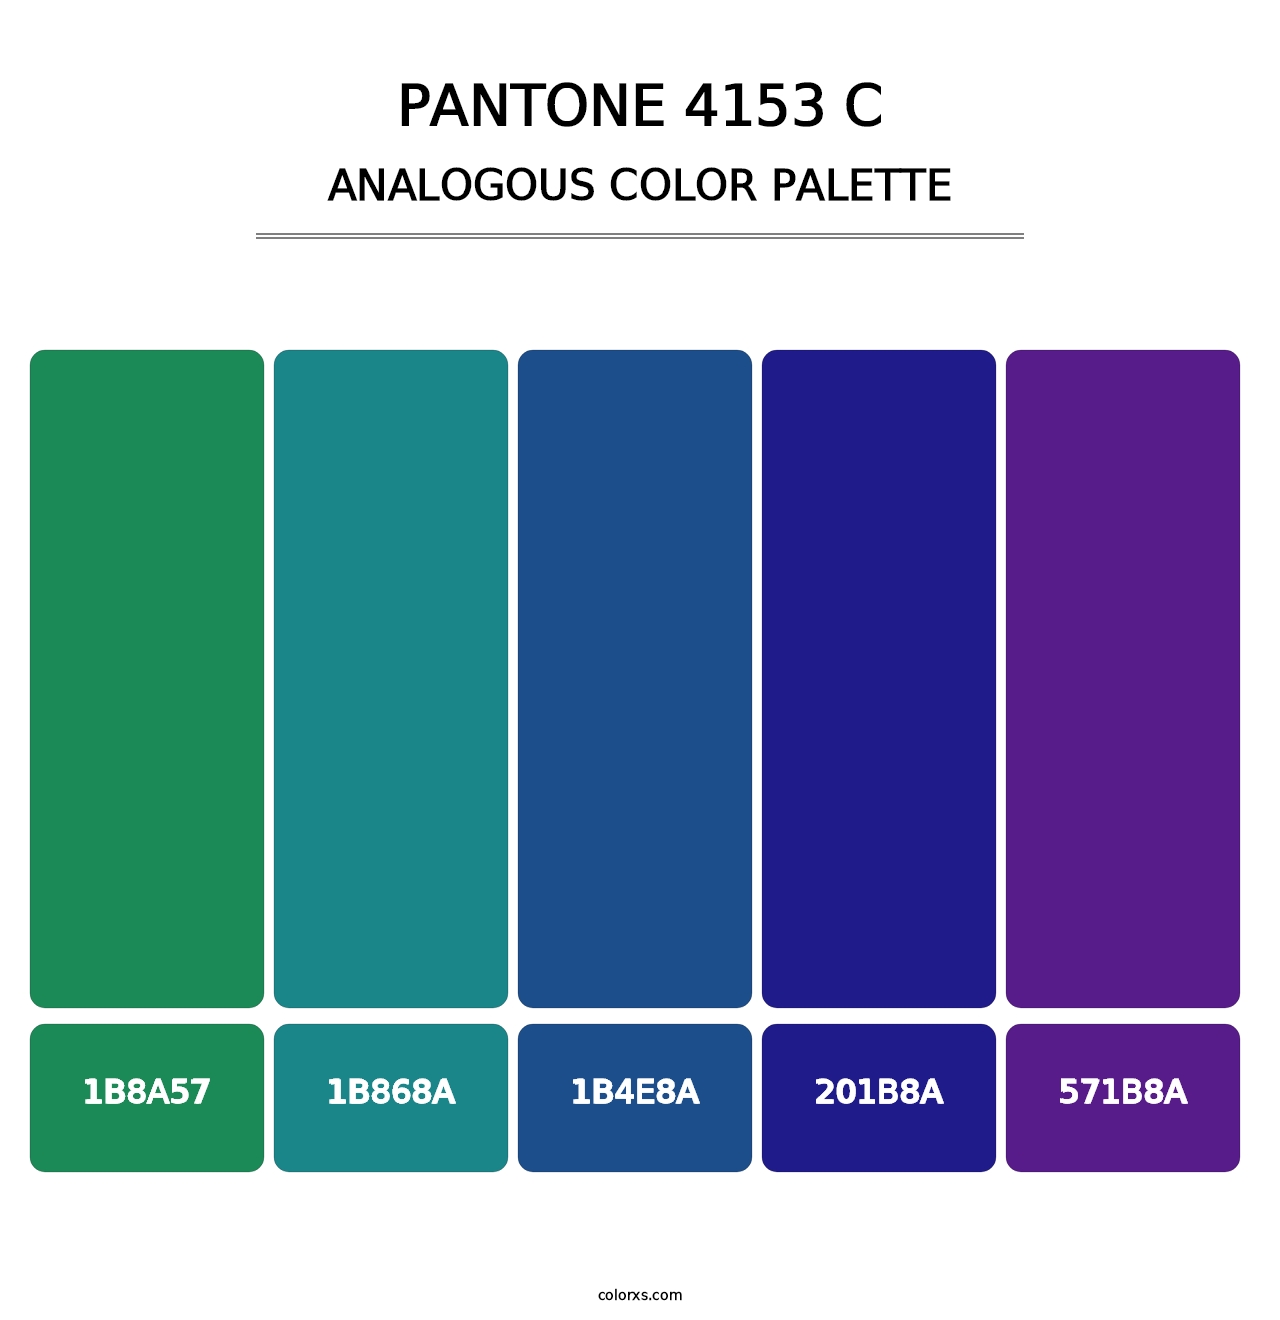 PANTONE 4153 C - Analogous Color Palette